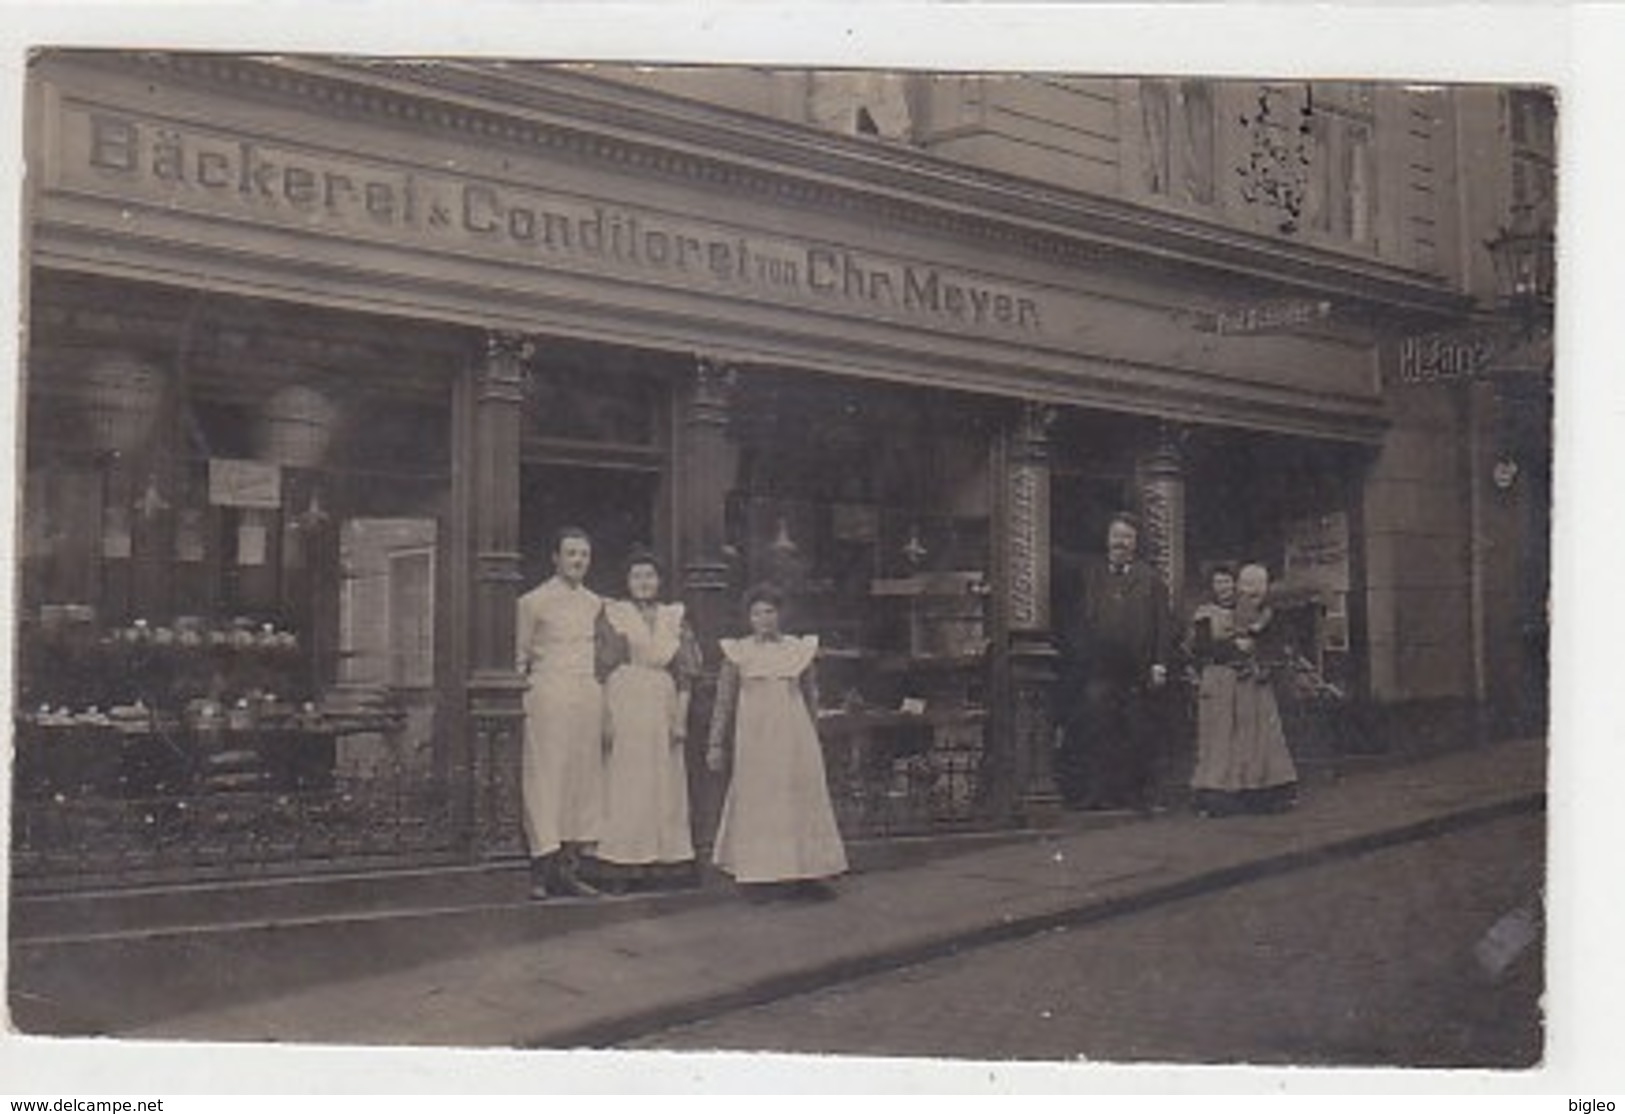 Elberfeld - Bäckerei-Conditorei Meier - Orig.Bromsilber-AK - 1908          (A-123-190410) - Wuppertal